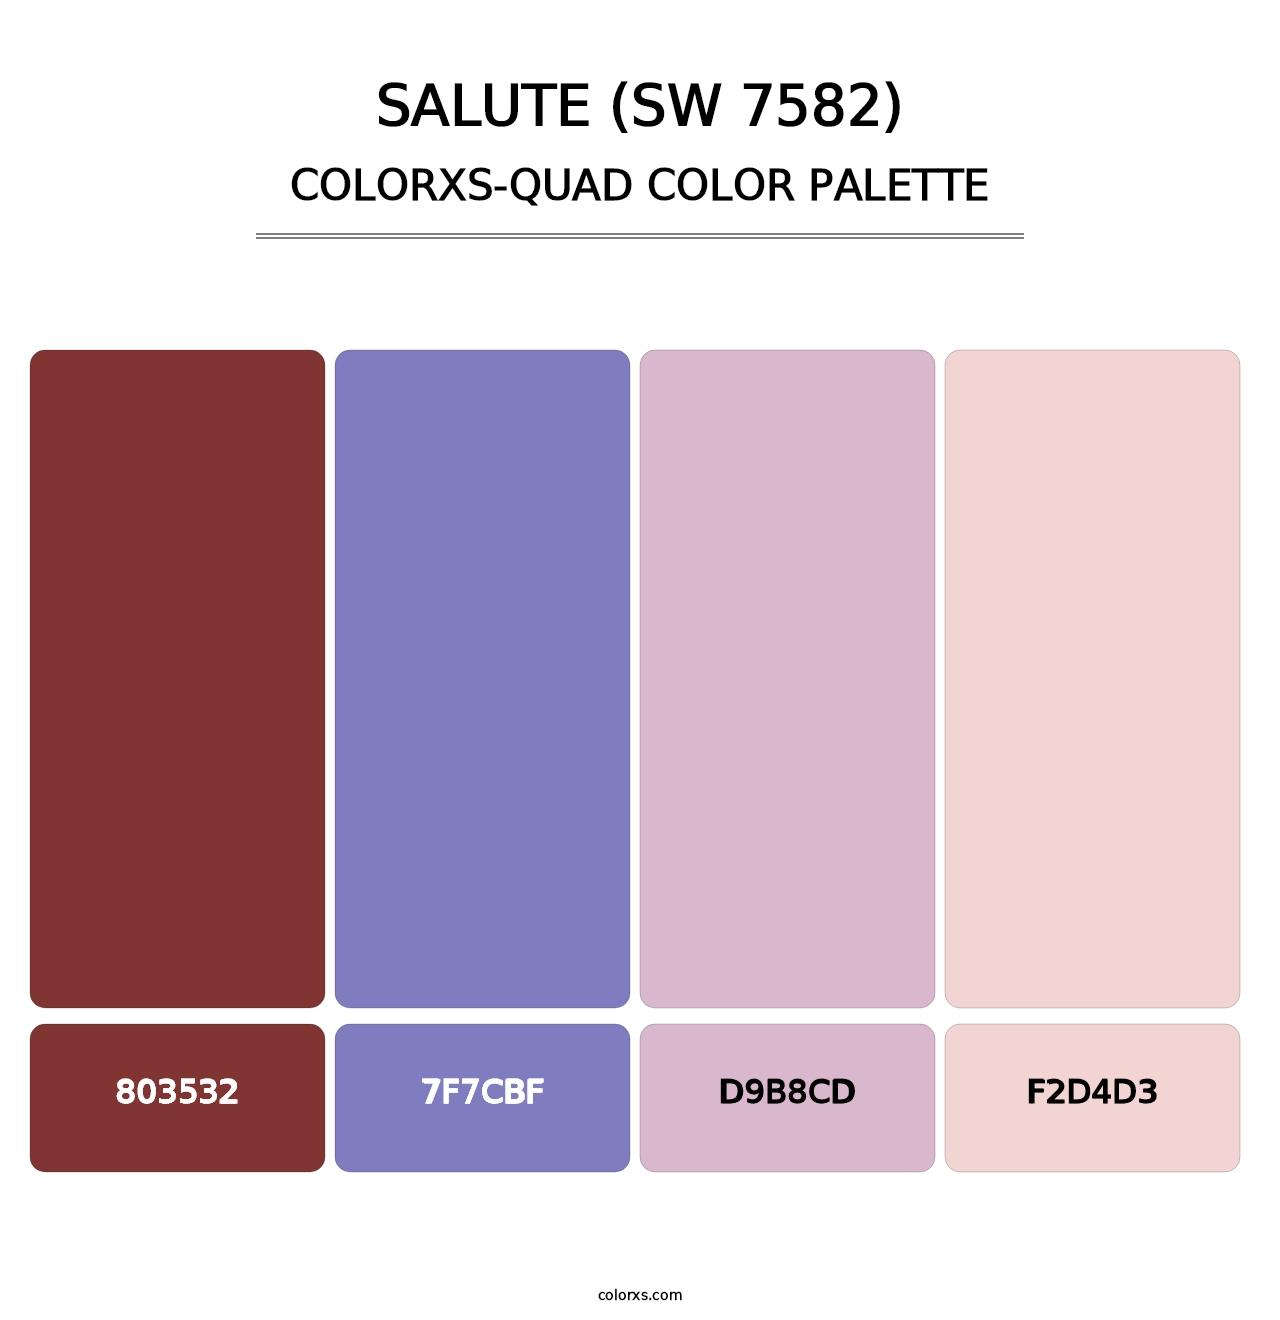 Salute (SW 7582) - Colorxs Quad Palette